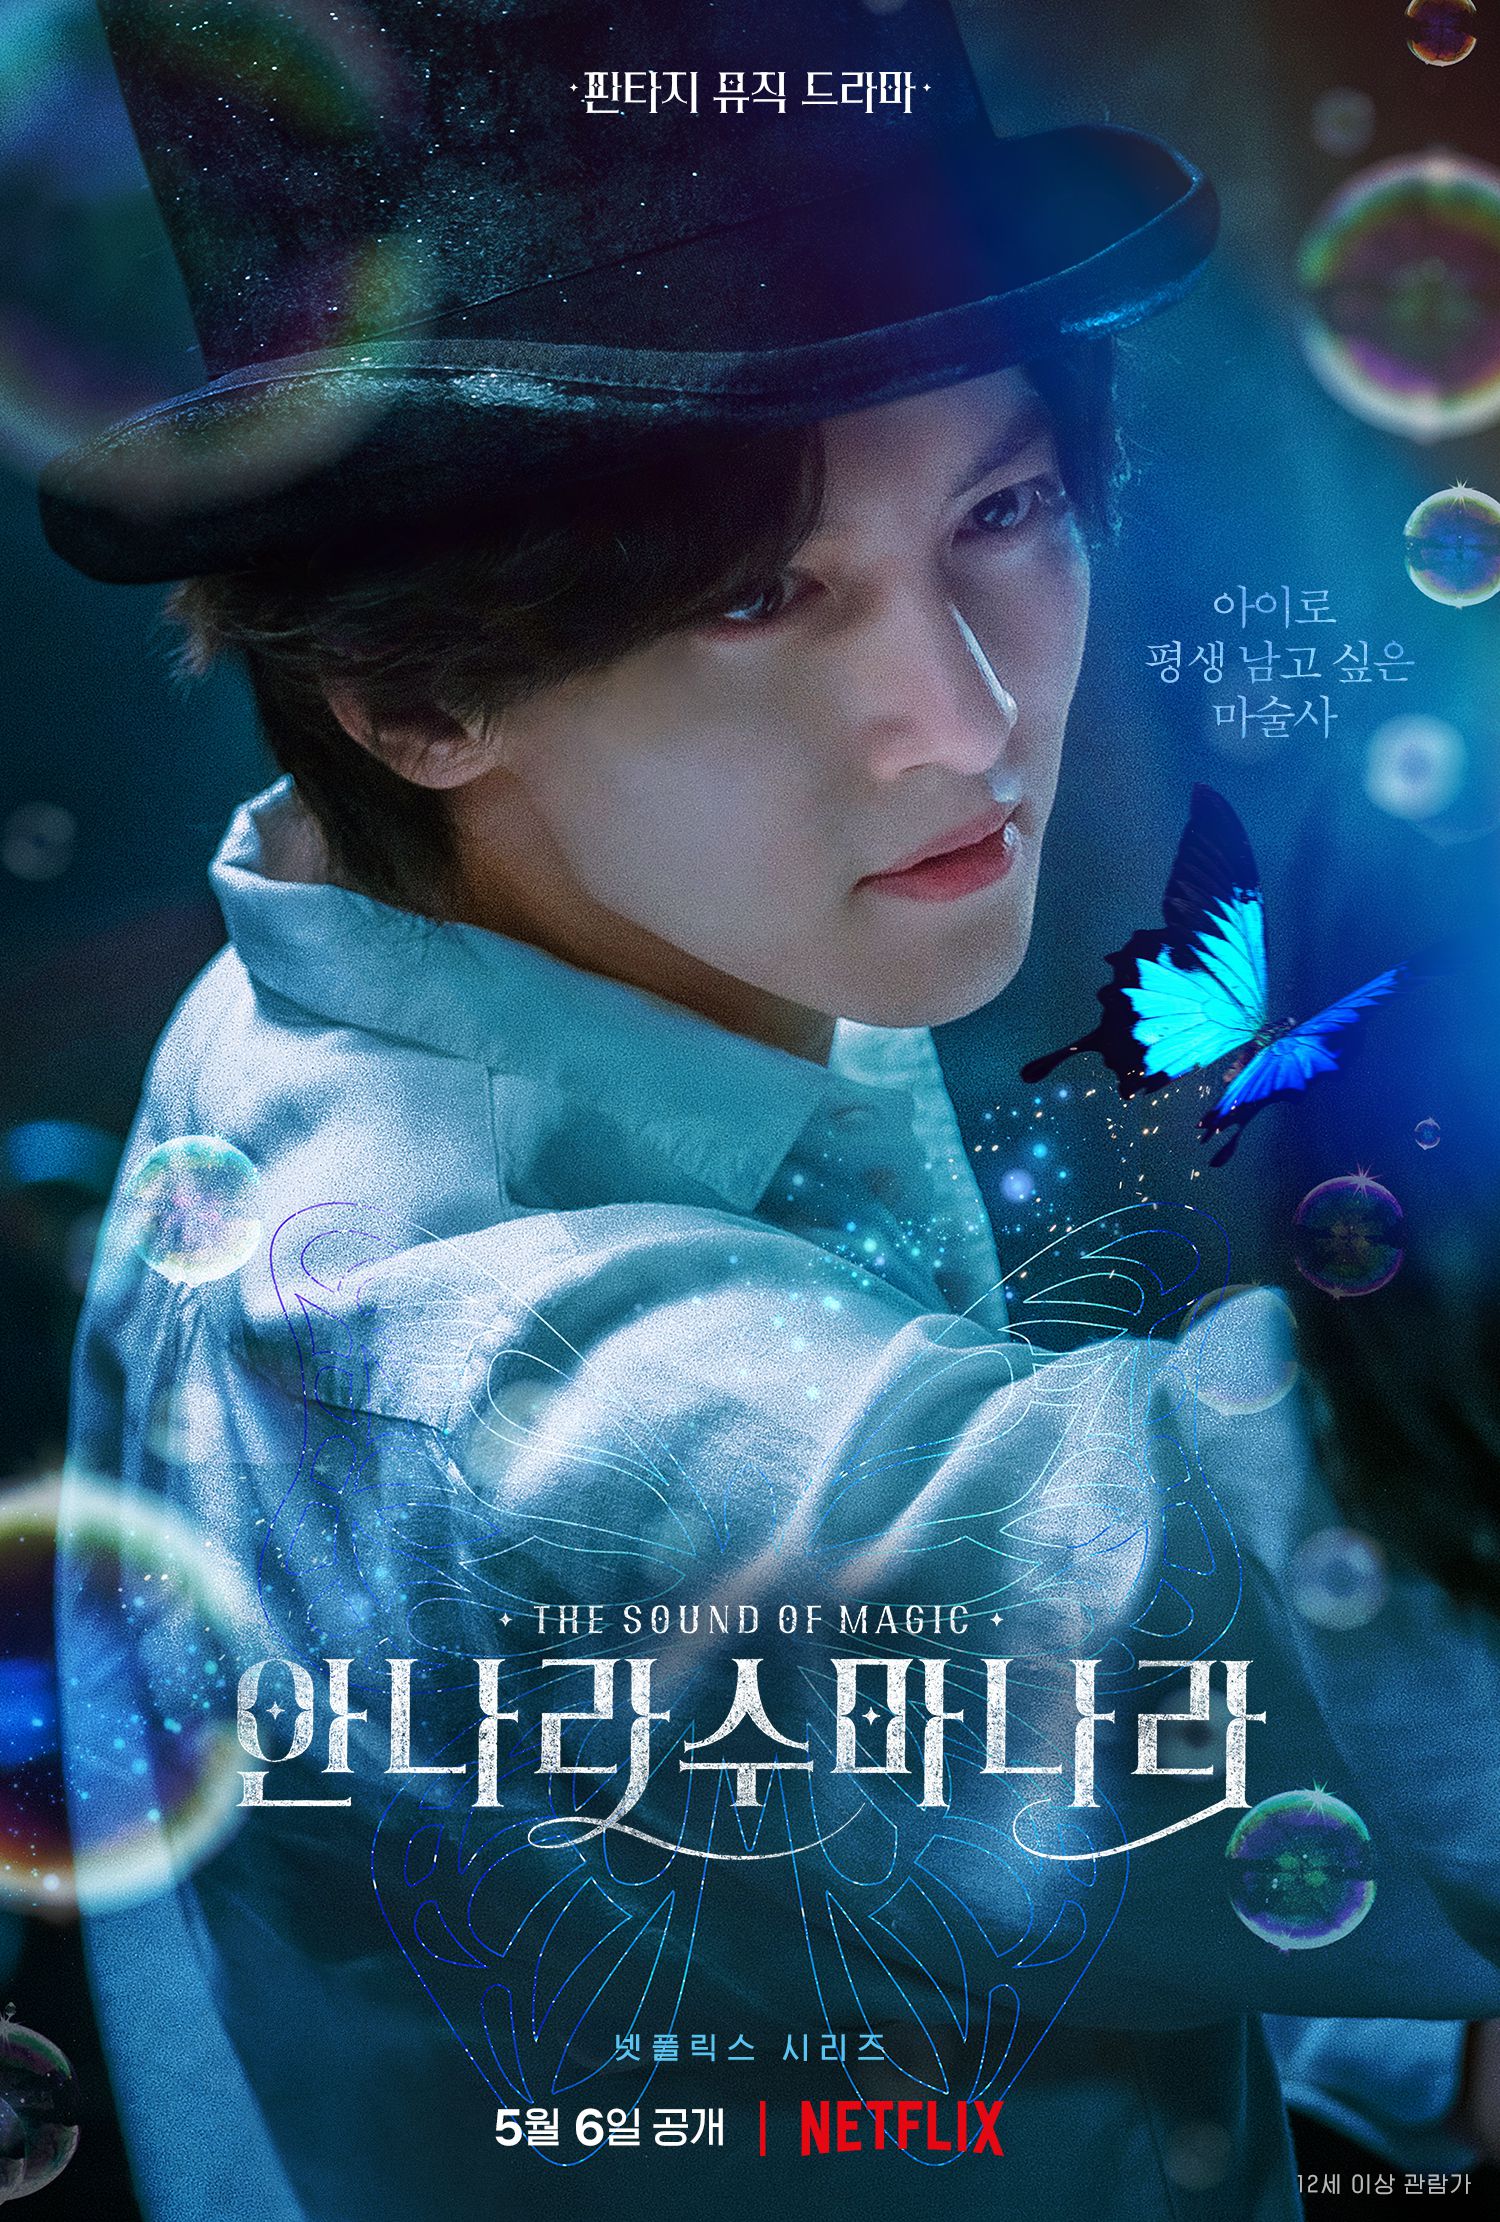 Visual đẹp mê hồn của Ji Chang Wook ở phim mới: Vừa huyền bí vừa lãng tử, nhìn là thấy xao xuyến - Ảnh 1.